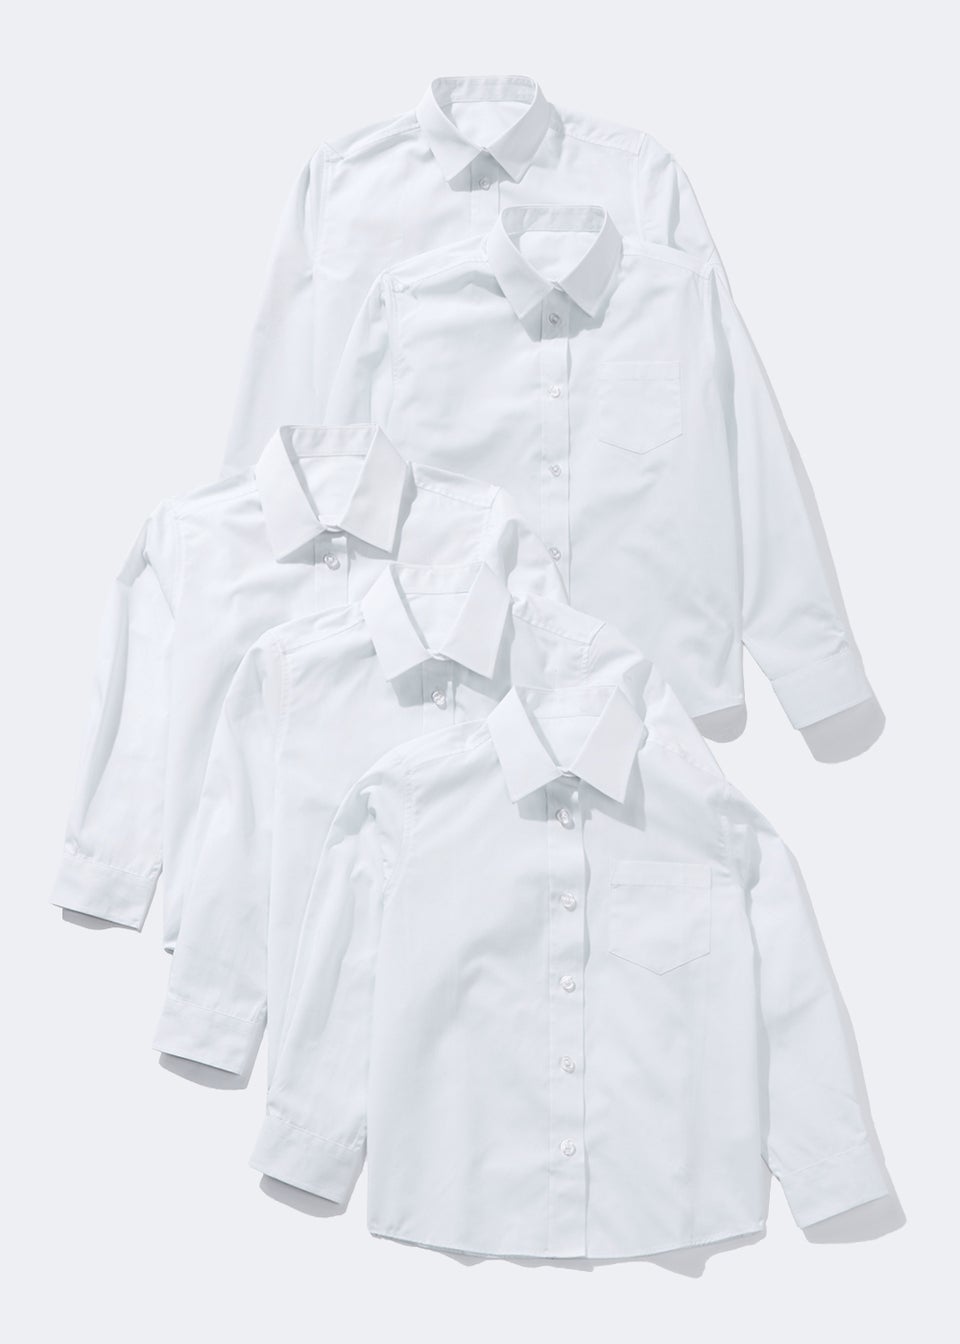 Girls 5 Pack White Long Sleeve School Blouses (4-16yrs)